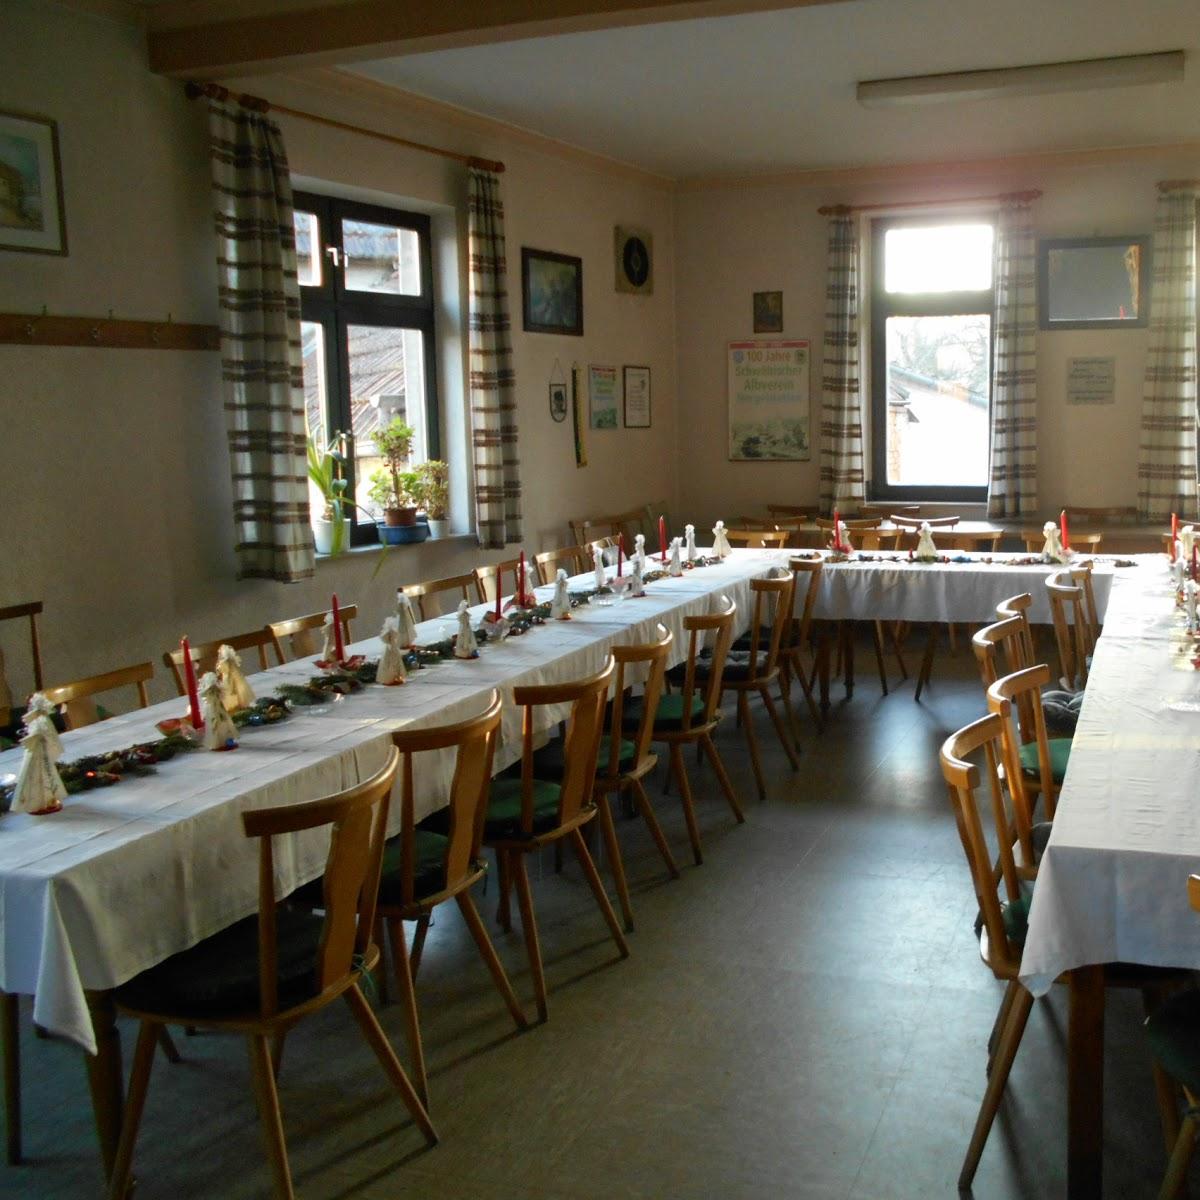 Restaurant "Grüner Baum Inh. W. Hitzler" in Heidenheim an der Brenz